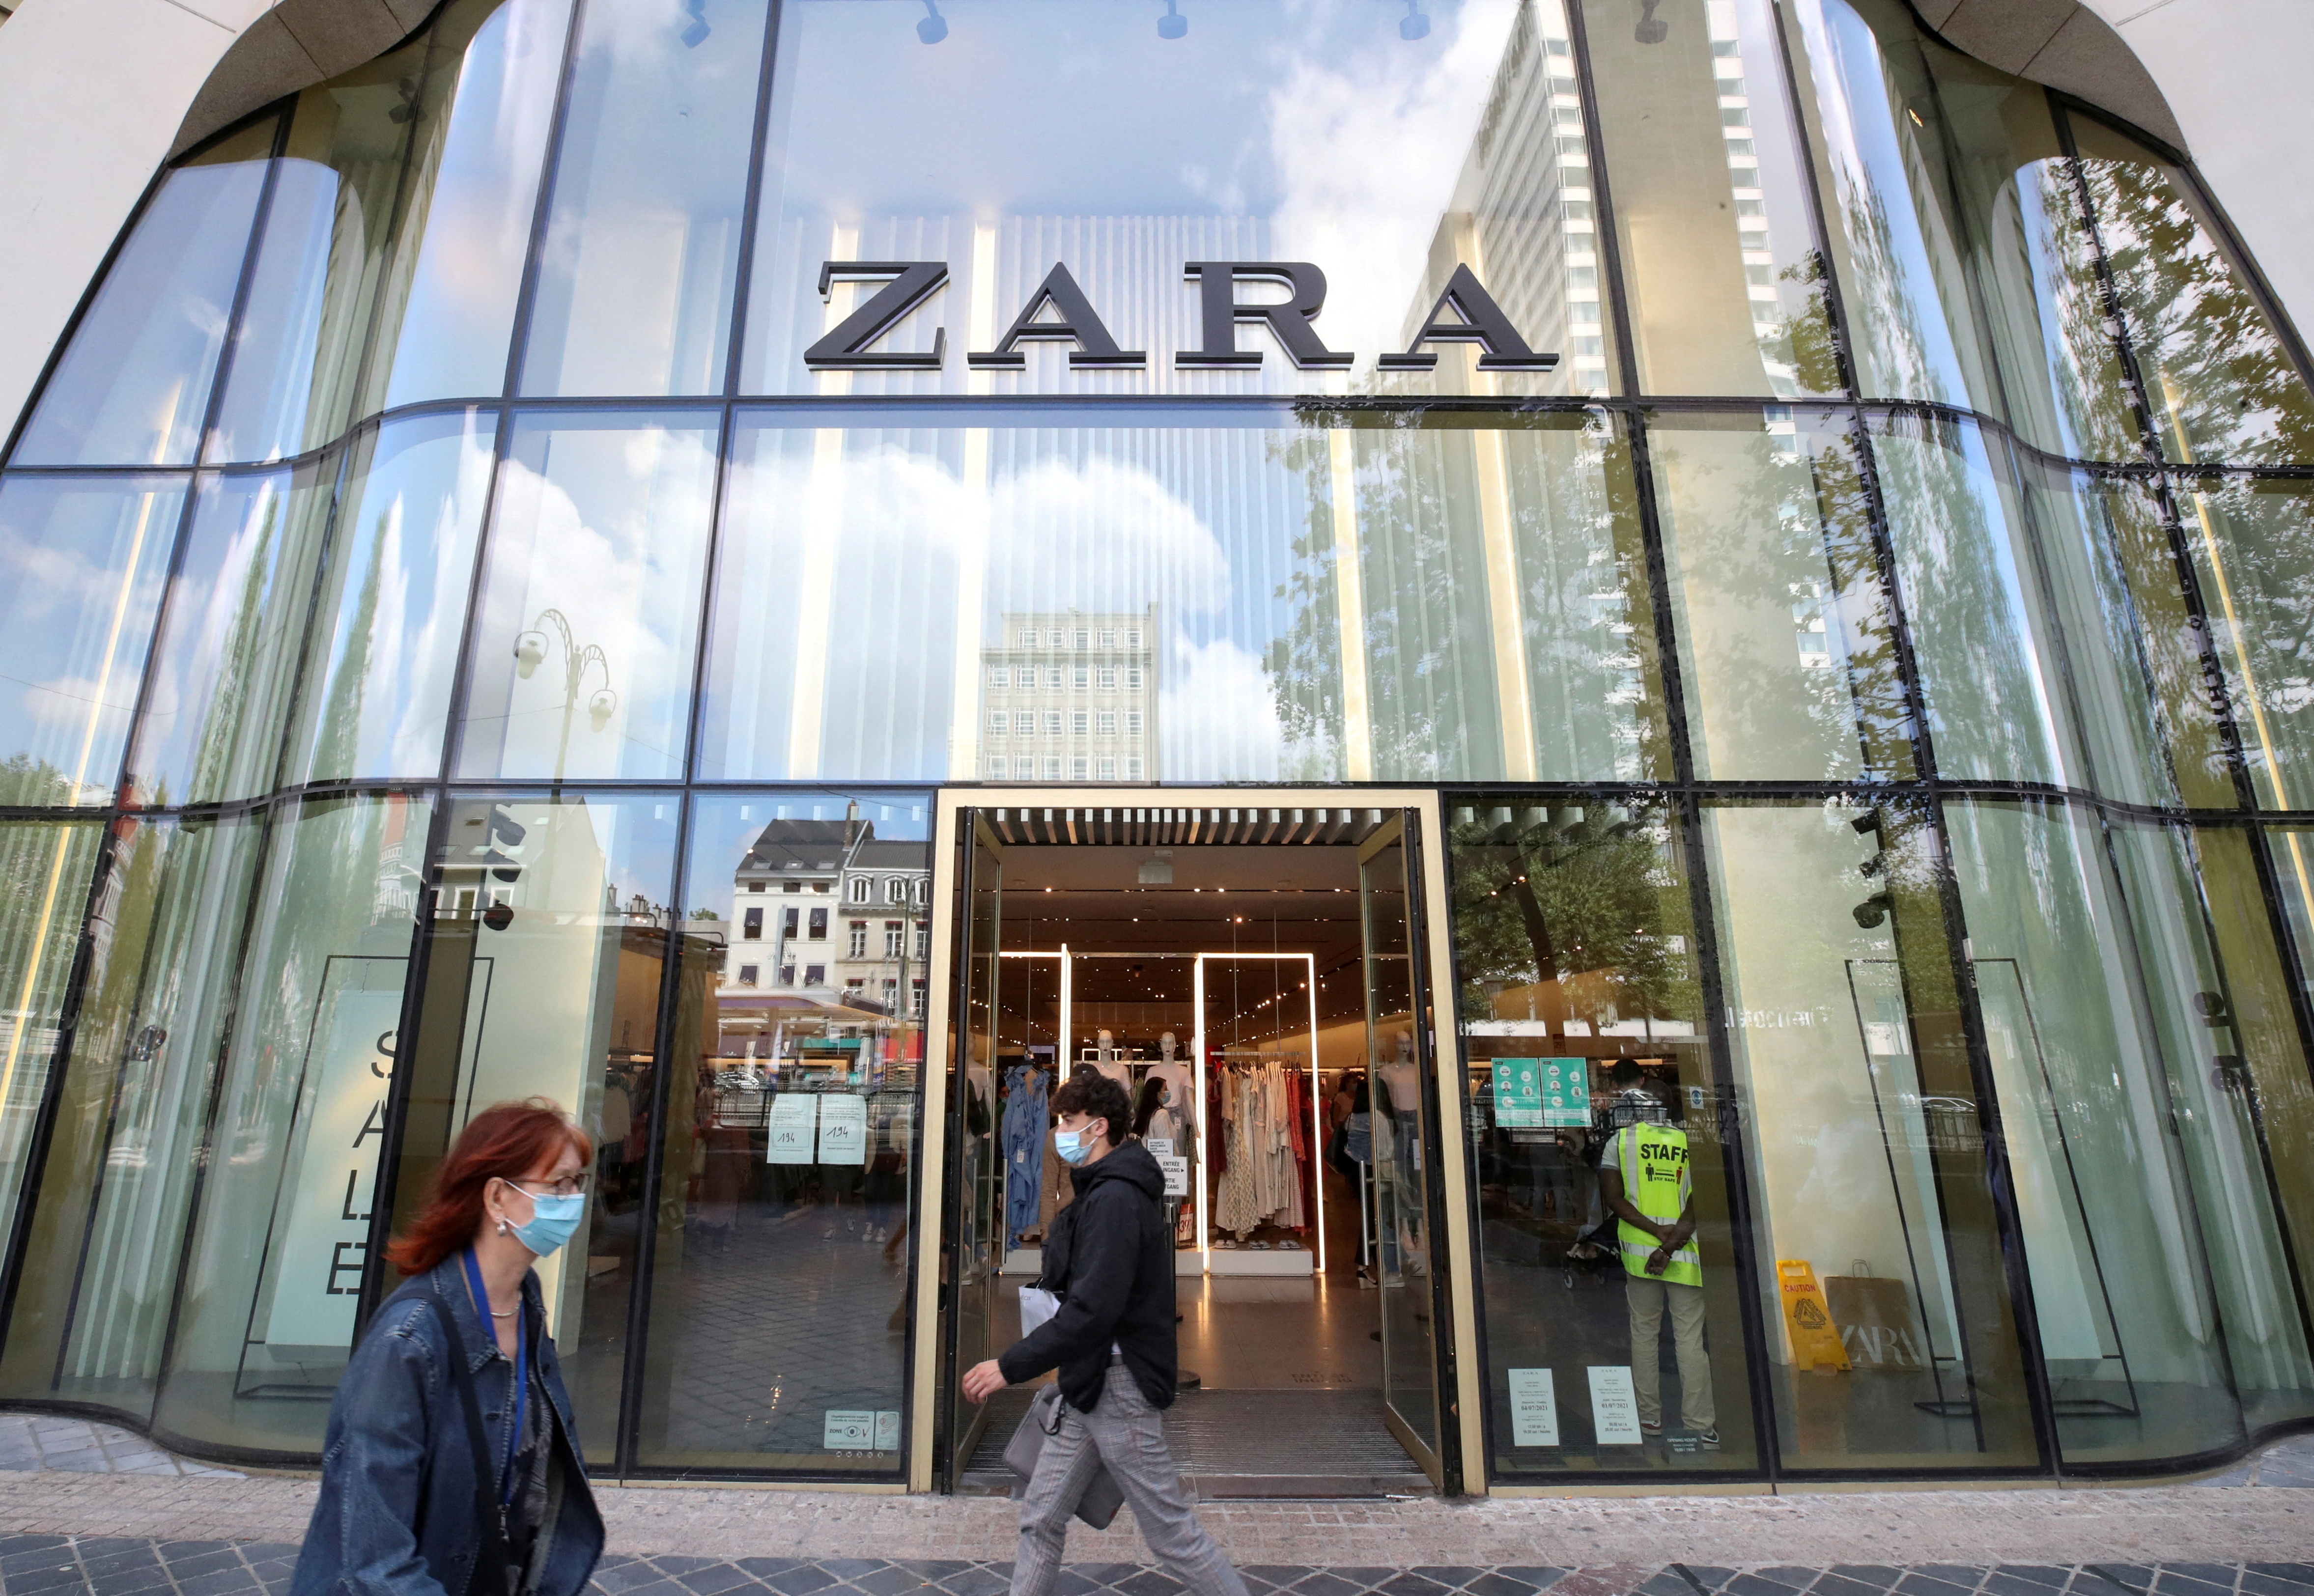 mostaza Socialismo Autocomplacencia 9 cosas sobre Zara que no sabías, revelados por una experta en la marca |  Business Insider España